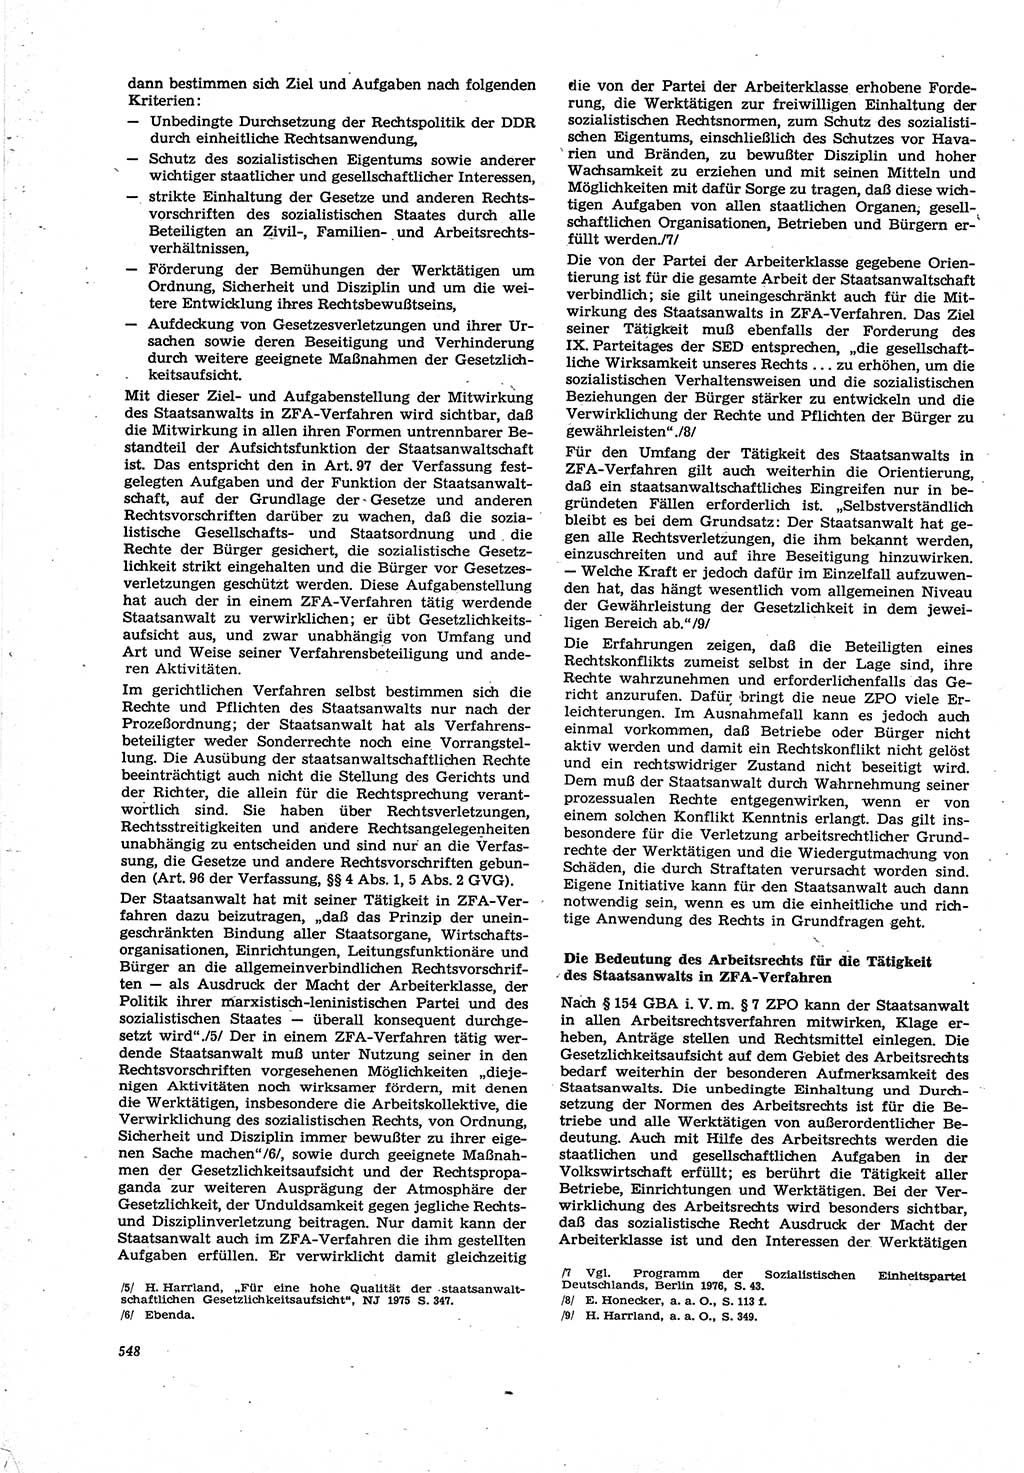 Neue Justiz (NJ), Zeitschrift für Recht und Rechtswissenschaft [Deutsche Demokratische Republik (DDR)], 30. Jahrgang 1976, Seite 548 (NJ DDR 1976, S. 548)